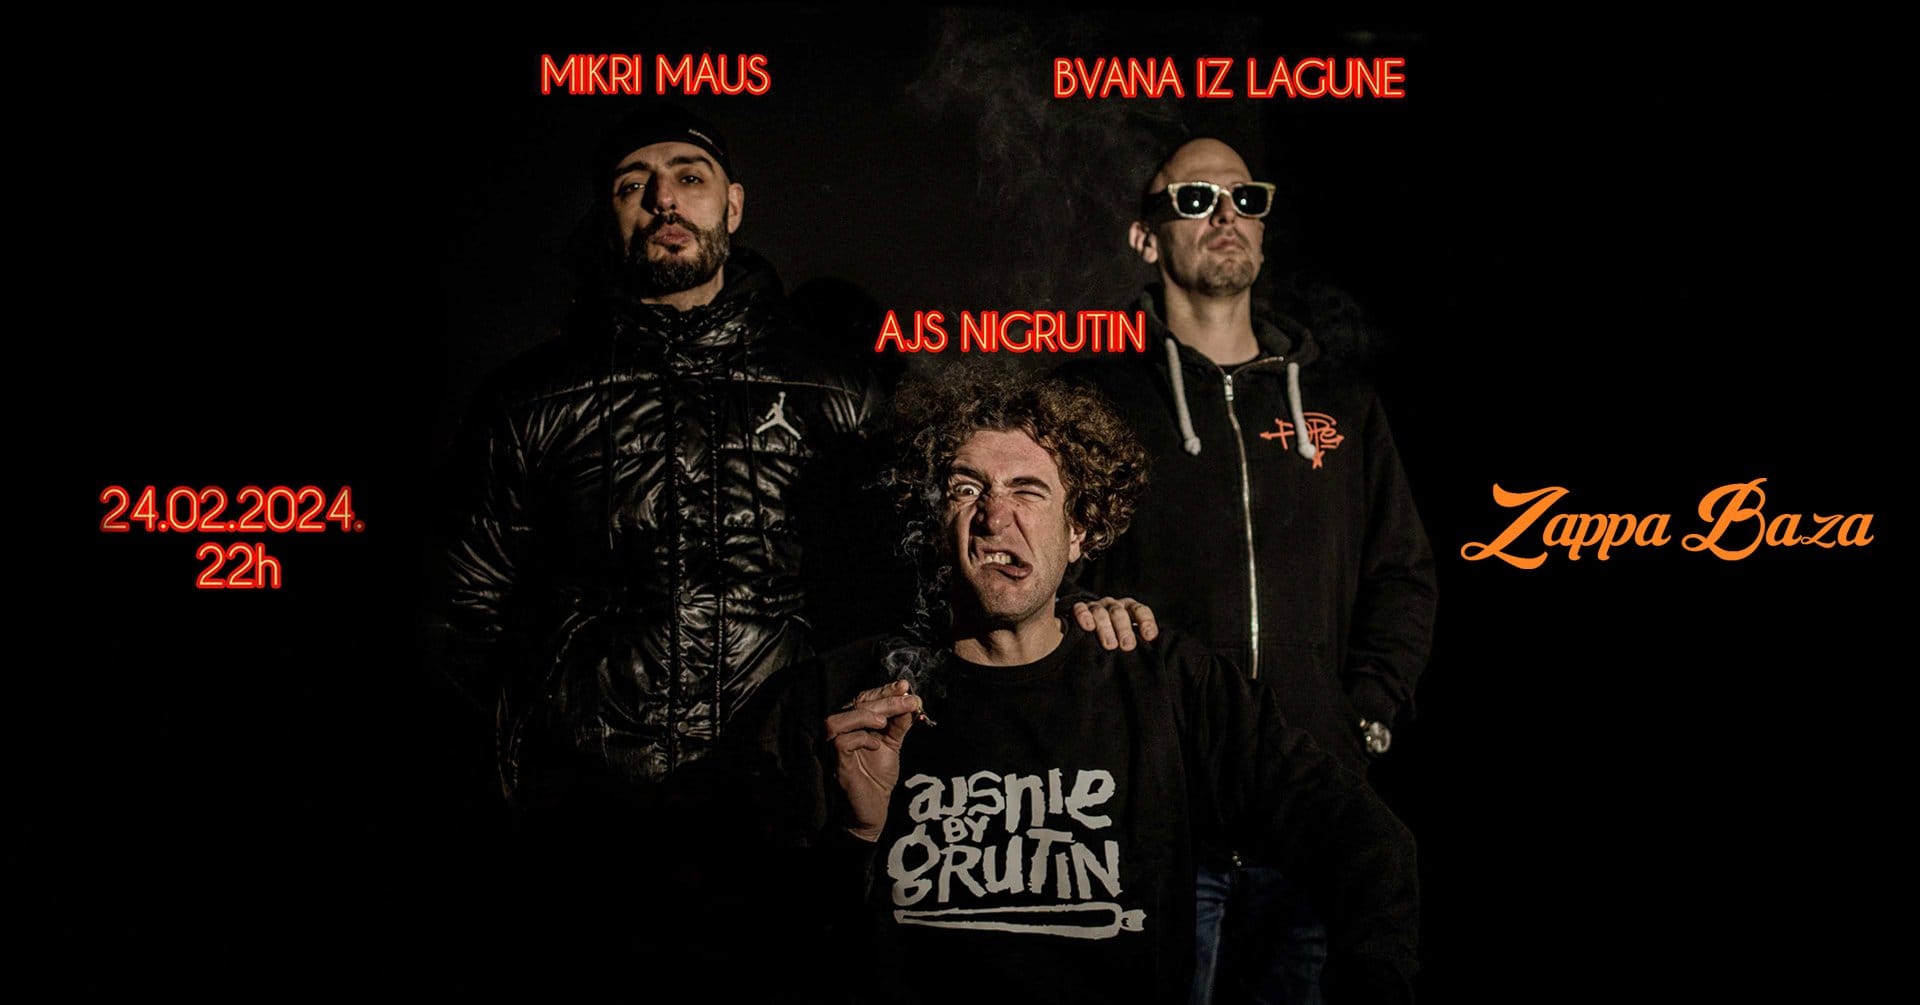 Mikri Maus / Ajs Nigrutin / Bvana iz Lagune // Zappa Baza // 24.02.